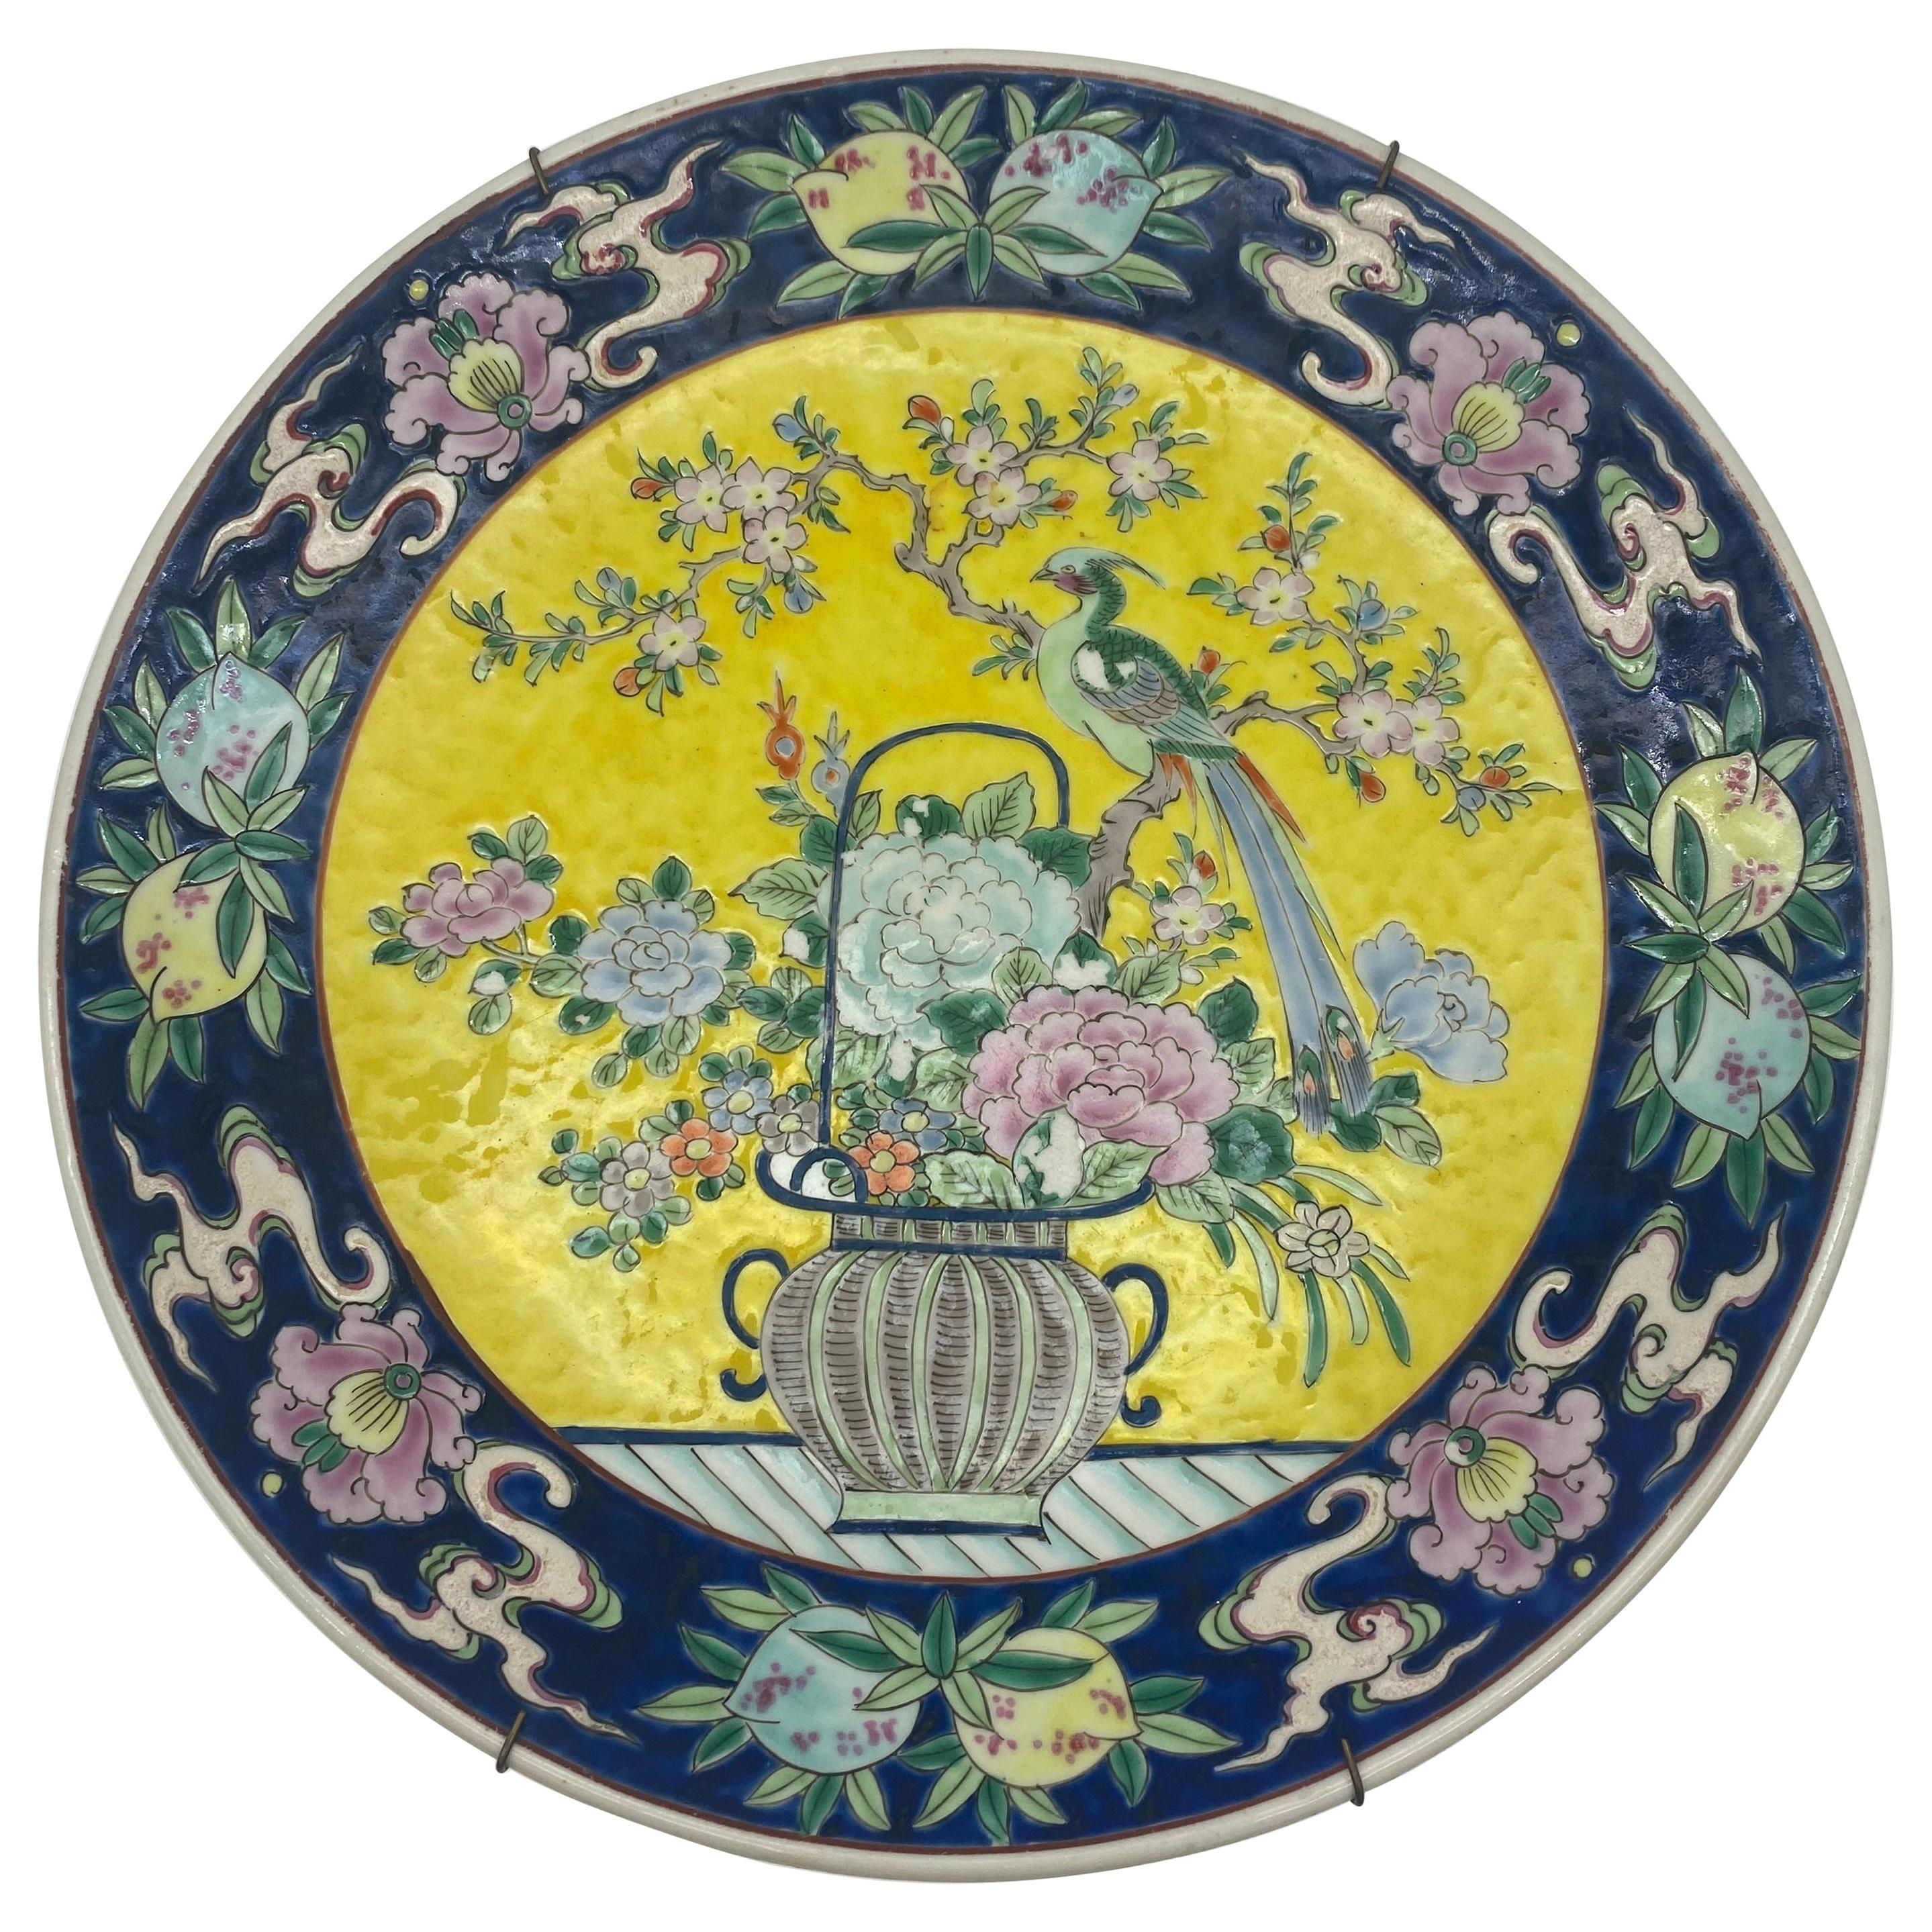 Chinesisches Porzellangeschirr aus dem 19. Jahrhundert